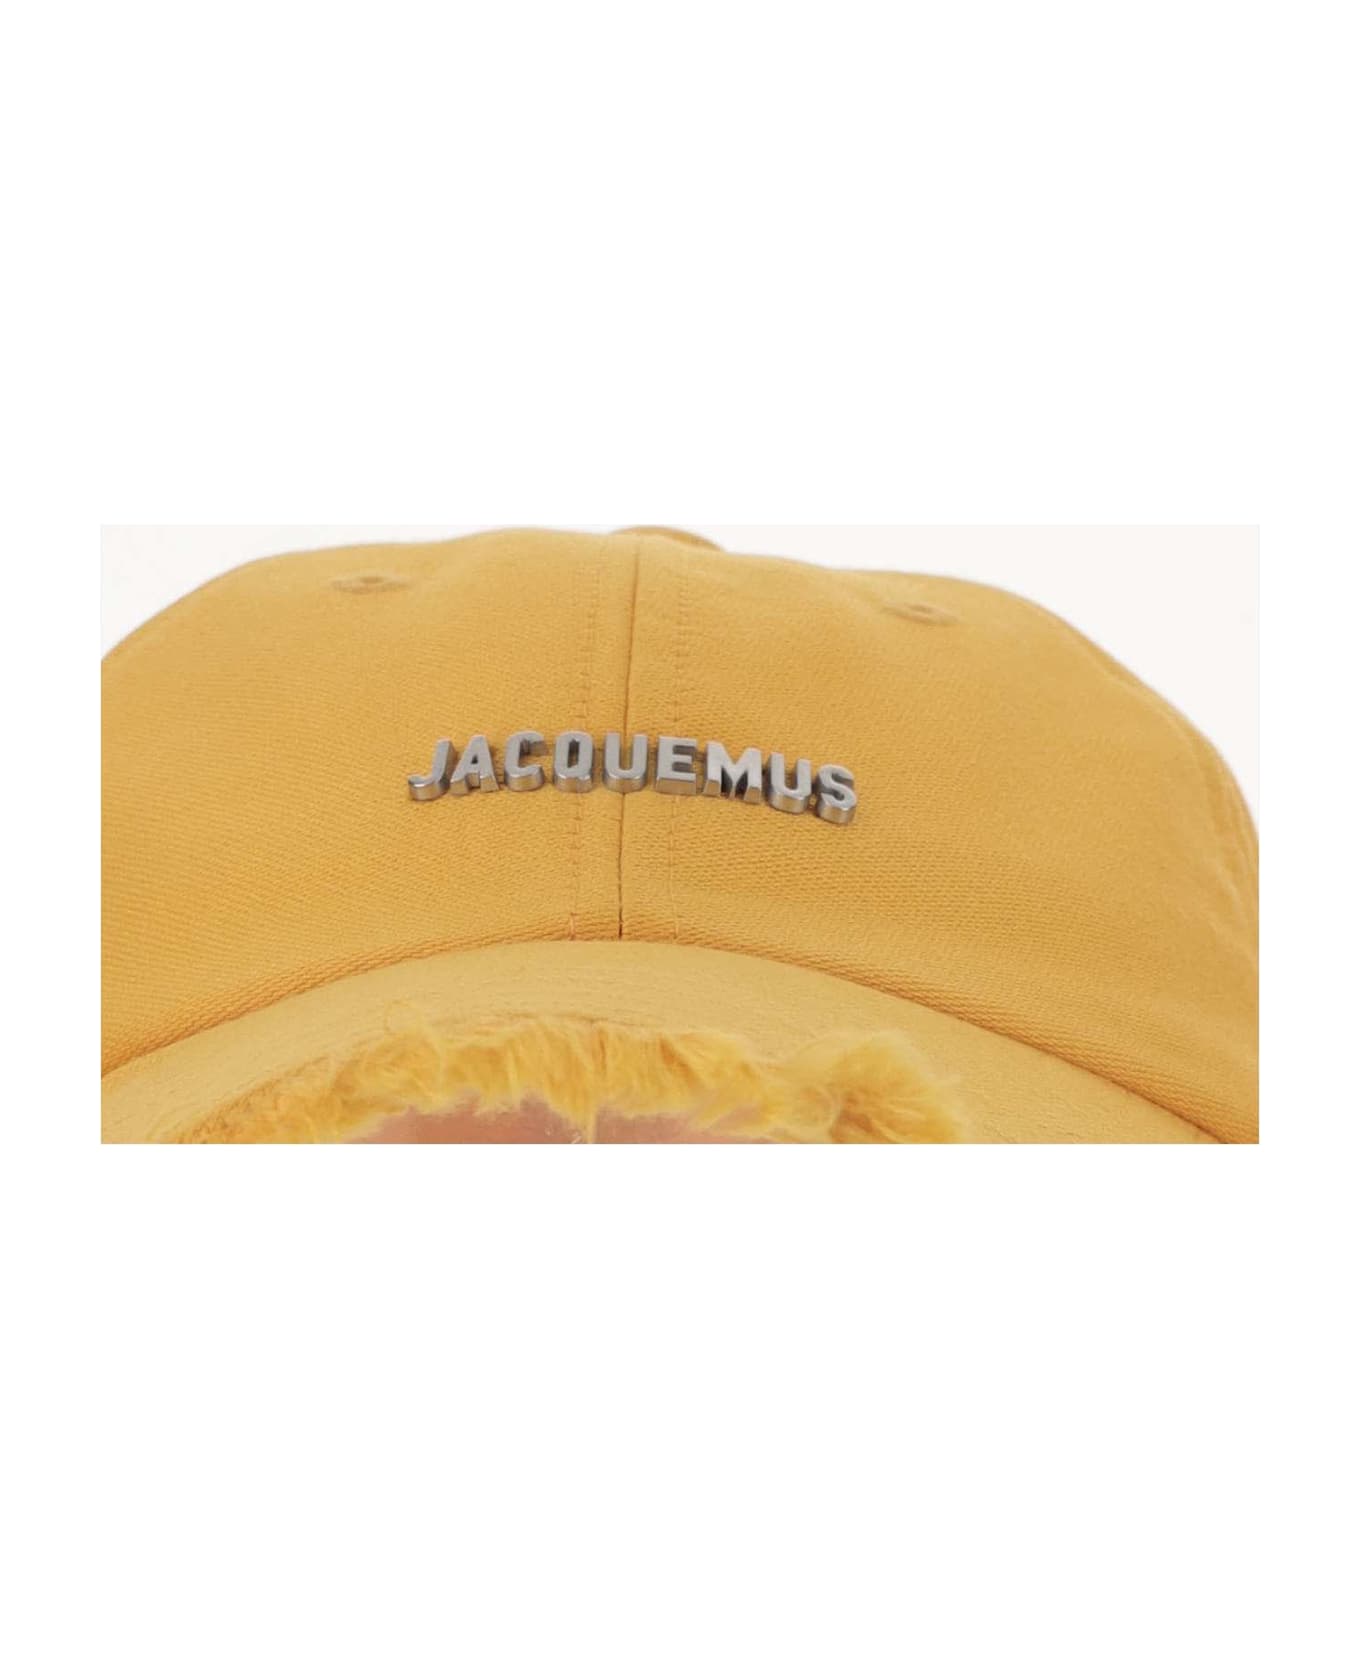 Jacquemus La Casquette Artichaut - Dark orange 帽子